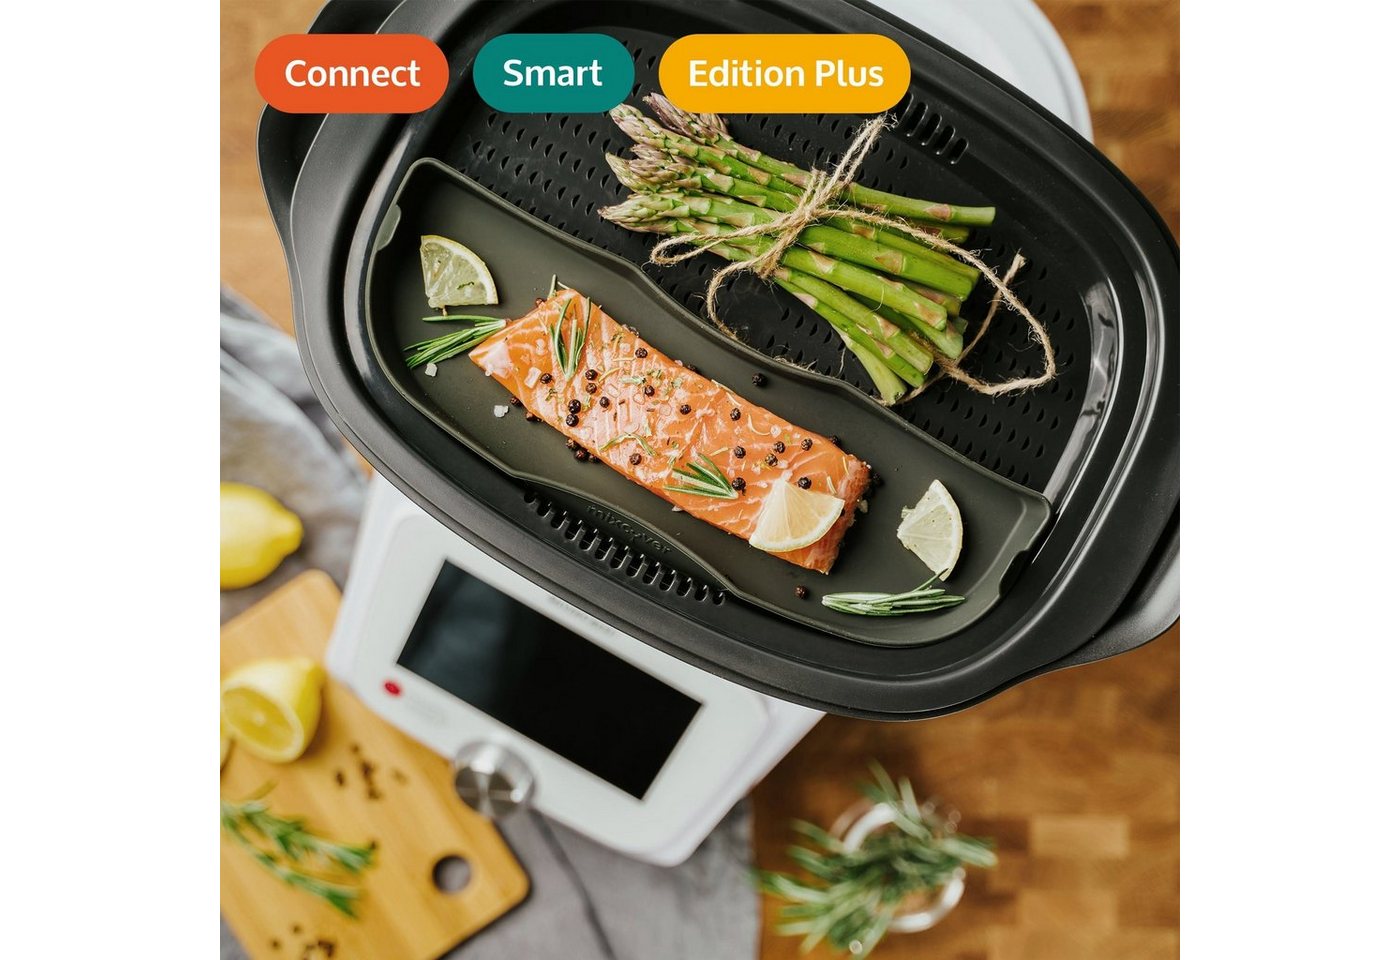 Mixcover Küchenmaschinen-Adapter mixcover Dampfgarform Auflaufform Halb für Monsieur Cuisine Connect & Smart Einlegeboden von Mixcover